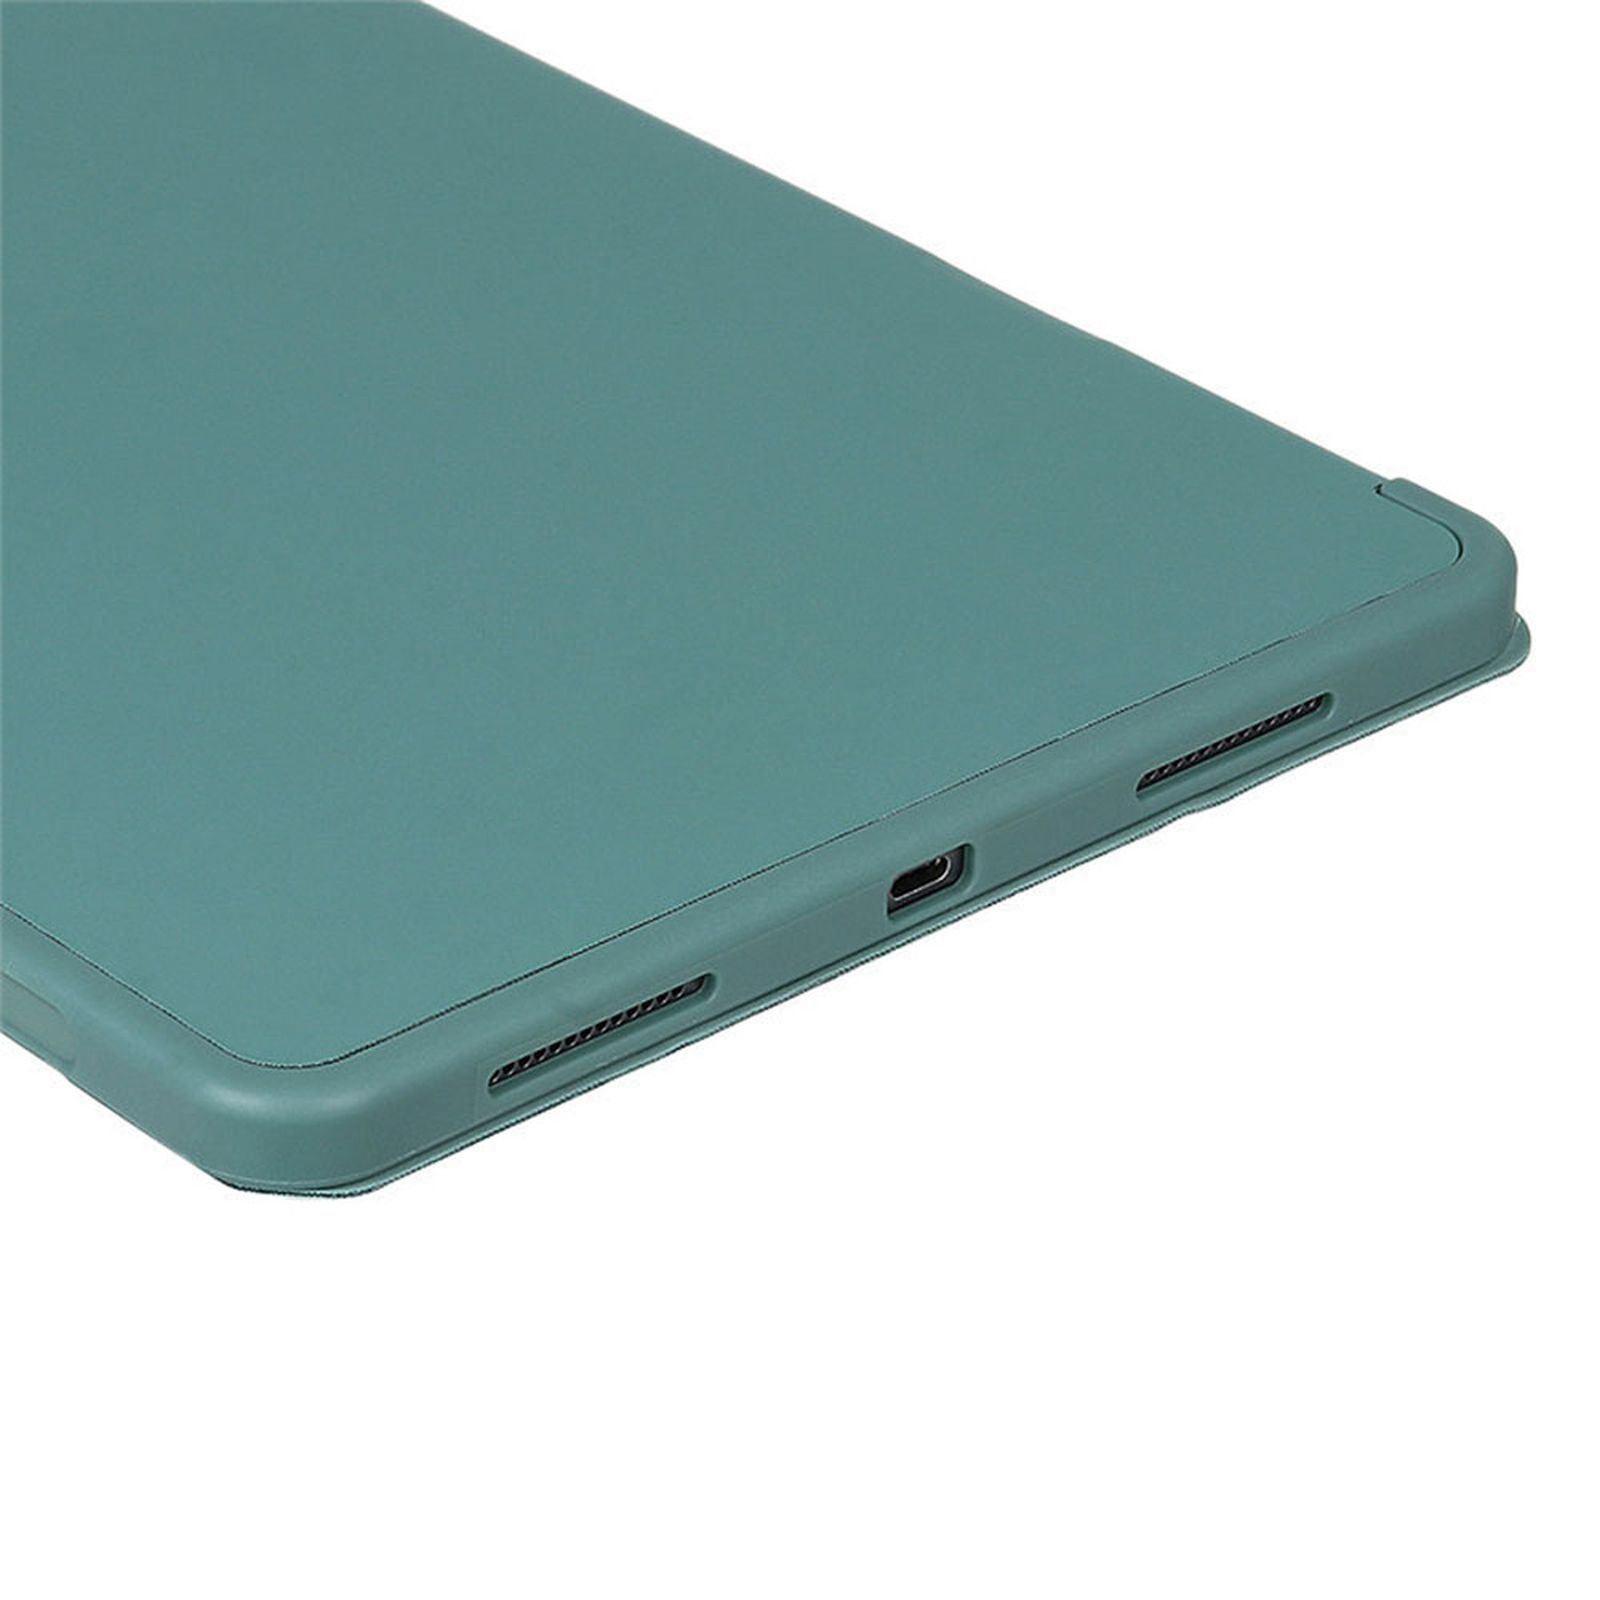 LOBWERK Hülle Schutzhülle Bookcover für Grün iPad Apple Pro 12.9 Kunststoff, 2020